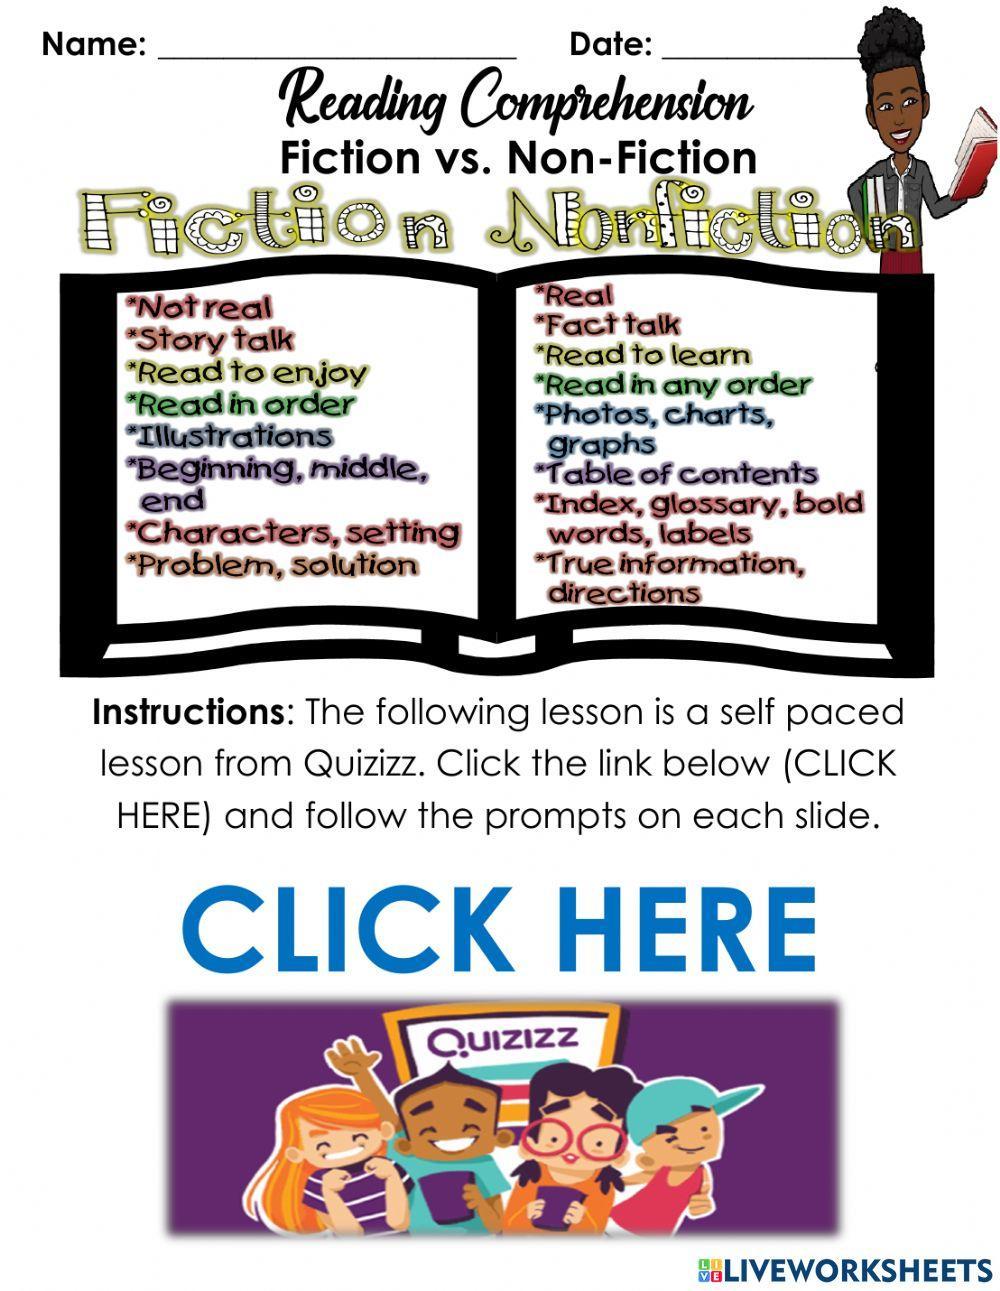 Quizizz Lesson - Fiction & Non-Fiction